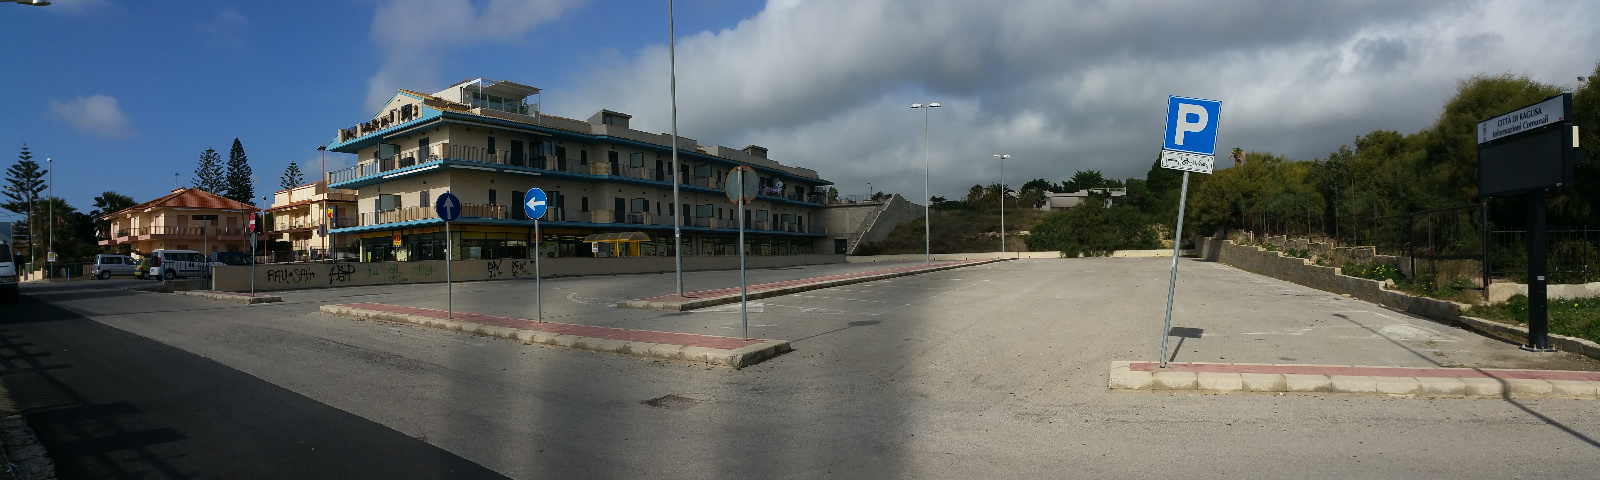  Parcheggio e pernottamento a Marina di Ragusa direttamente accanto al MD supermercato.